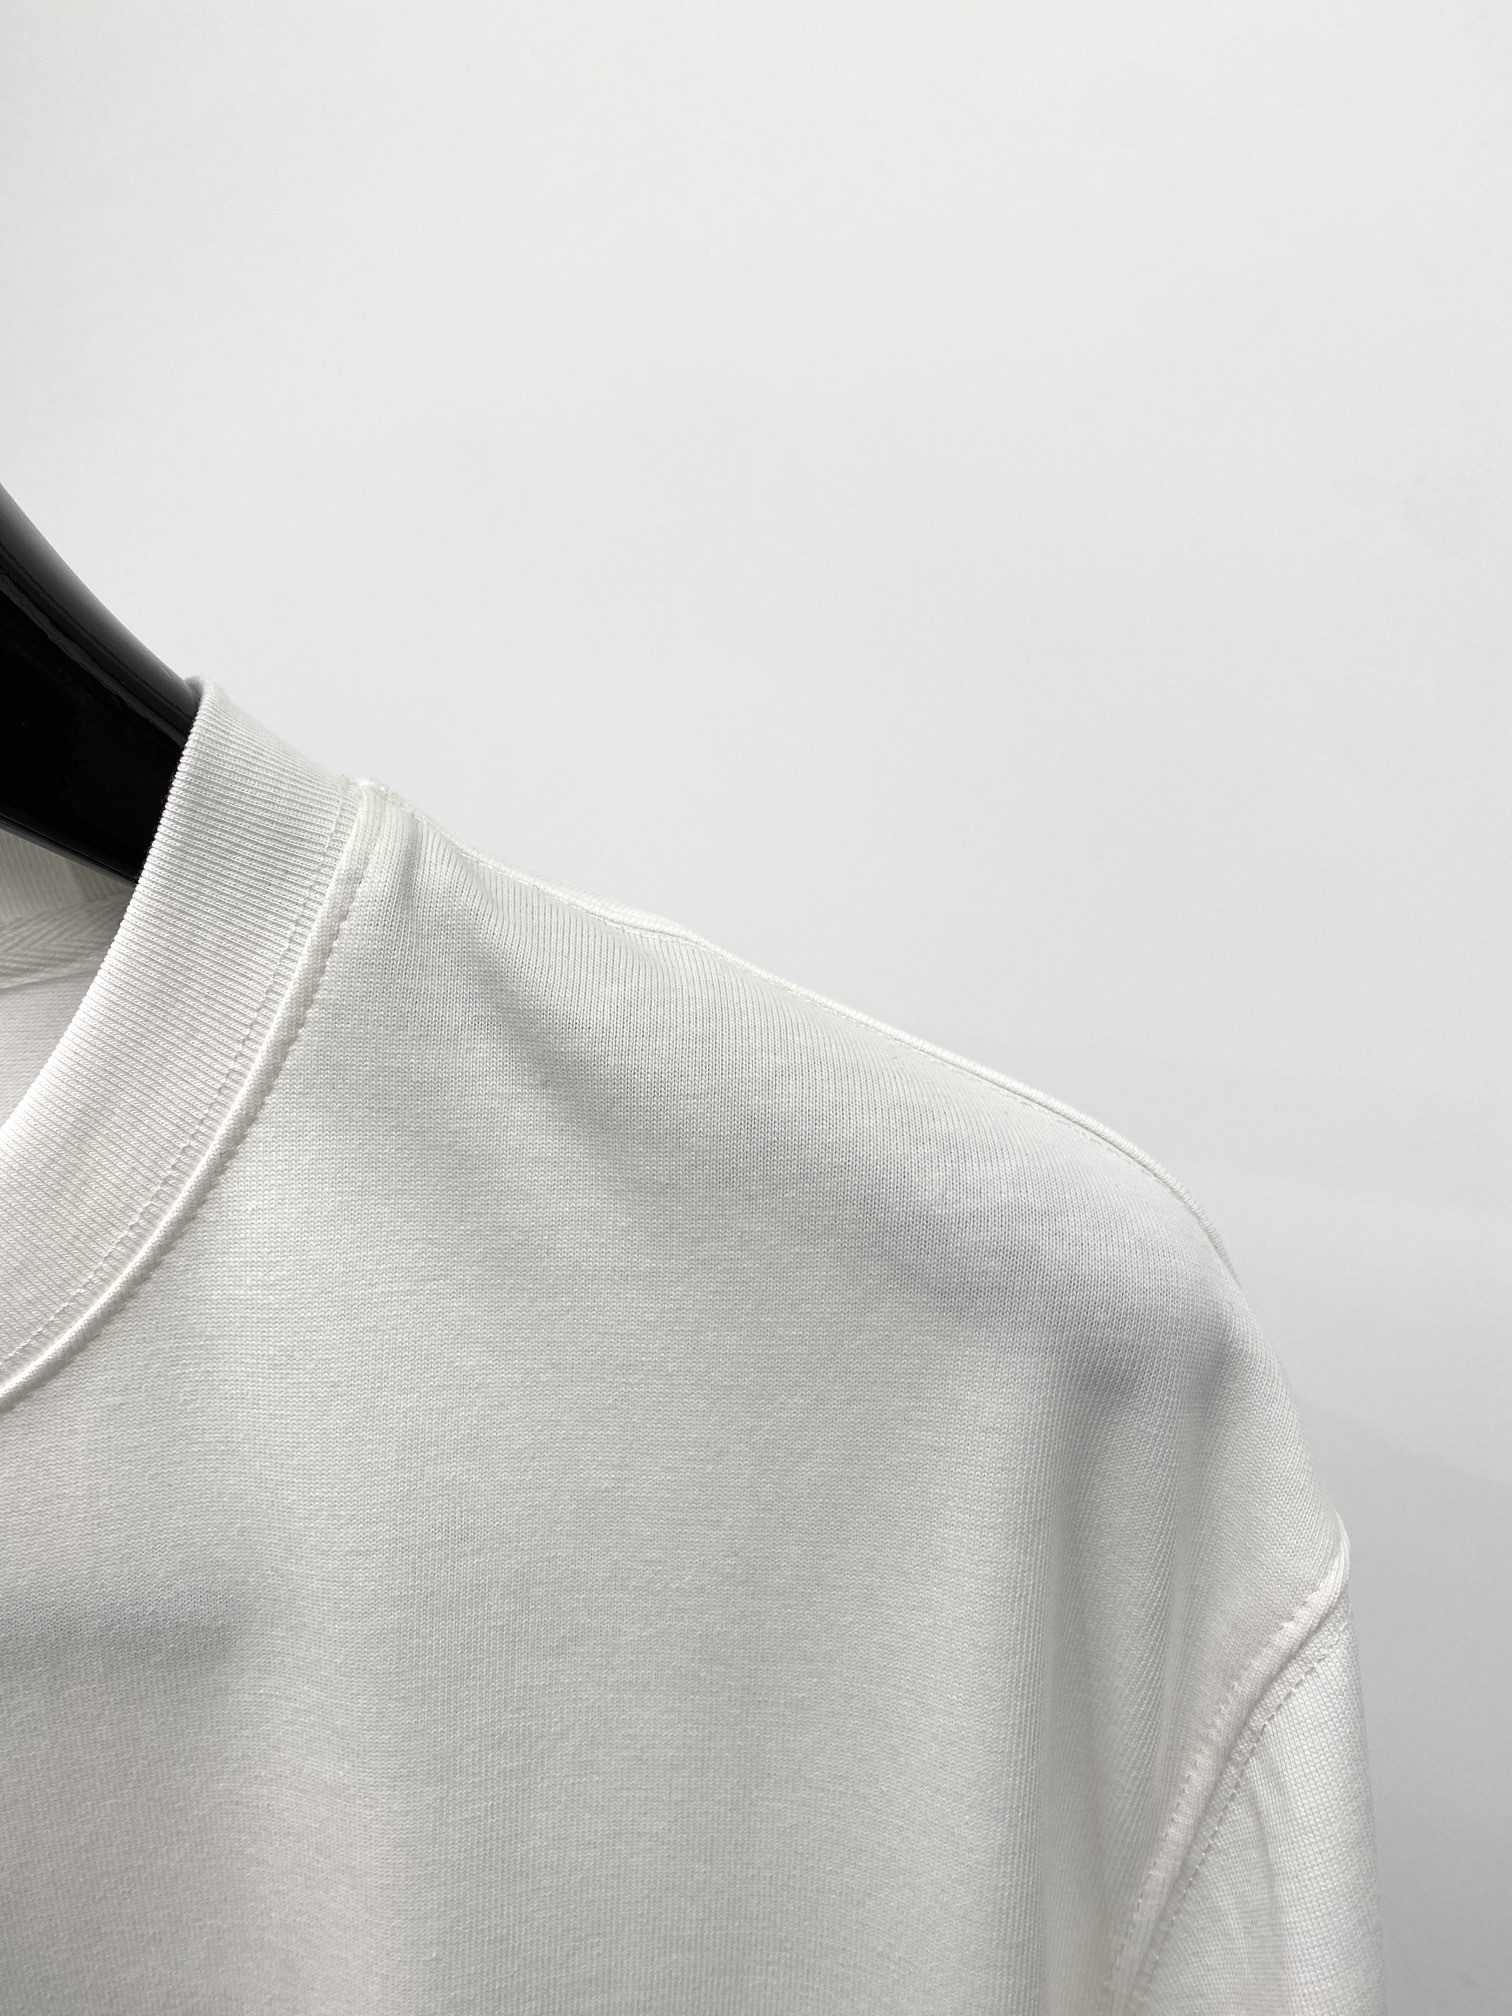 個性的 バレンシアガtシャツ メンズ激安通販 トップス ファッション 人気 ロゴプリント シンプル 快適 ホワイト_2